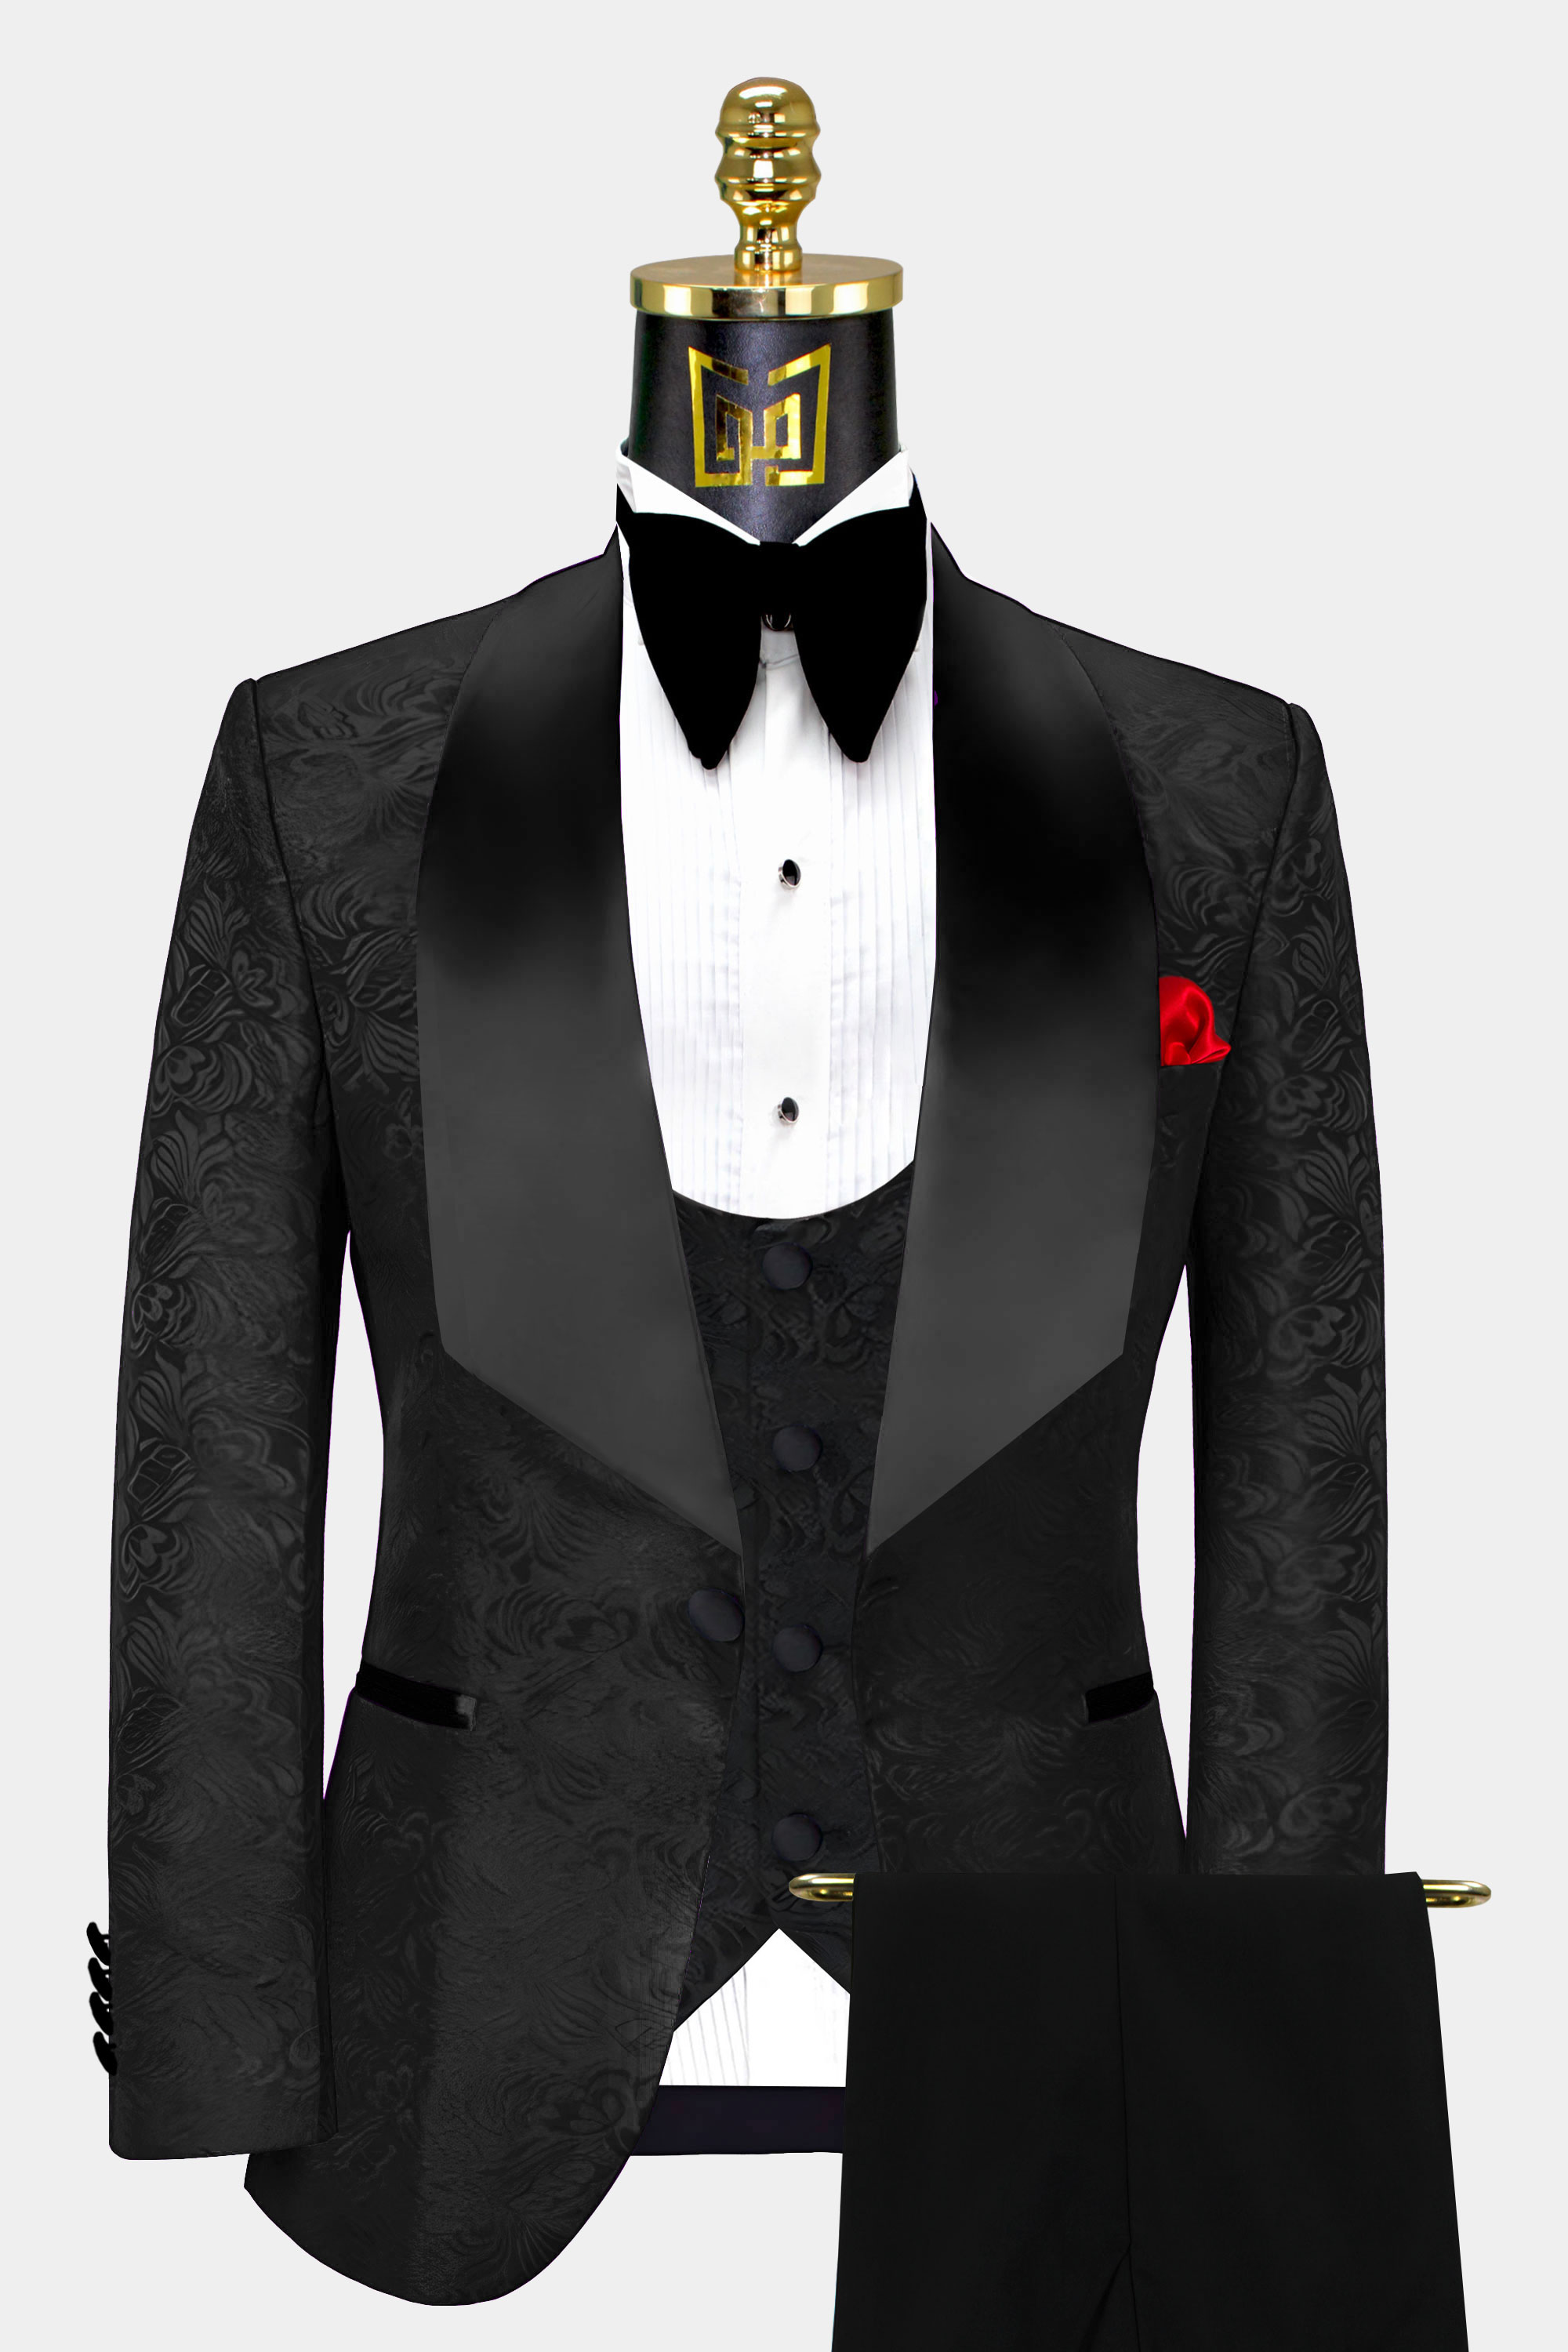 Black 3 piece Men Suit Wedding Suit Groom Wear Suit 3 Piece Suit ...